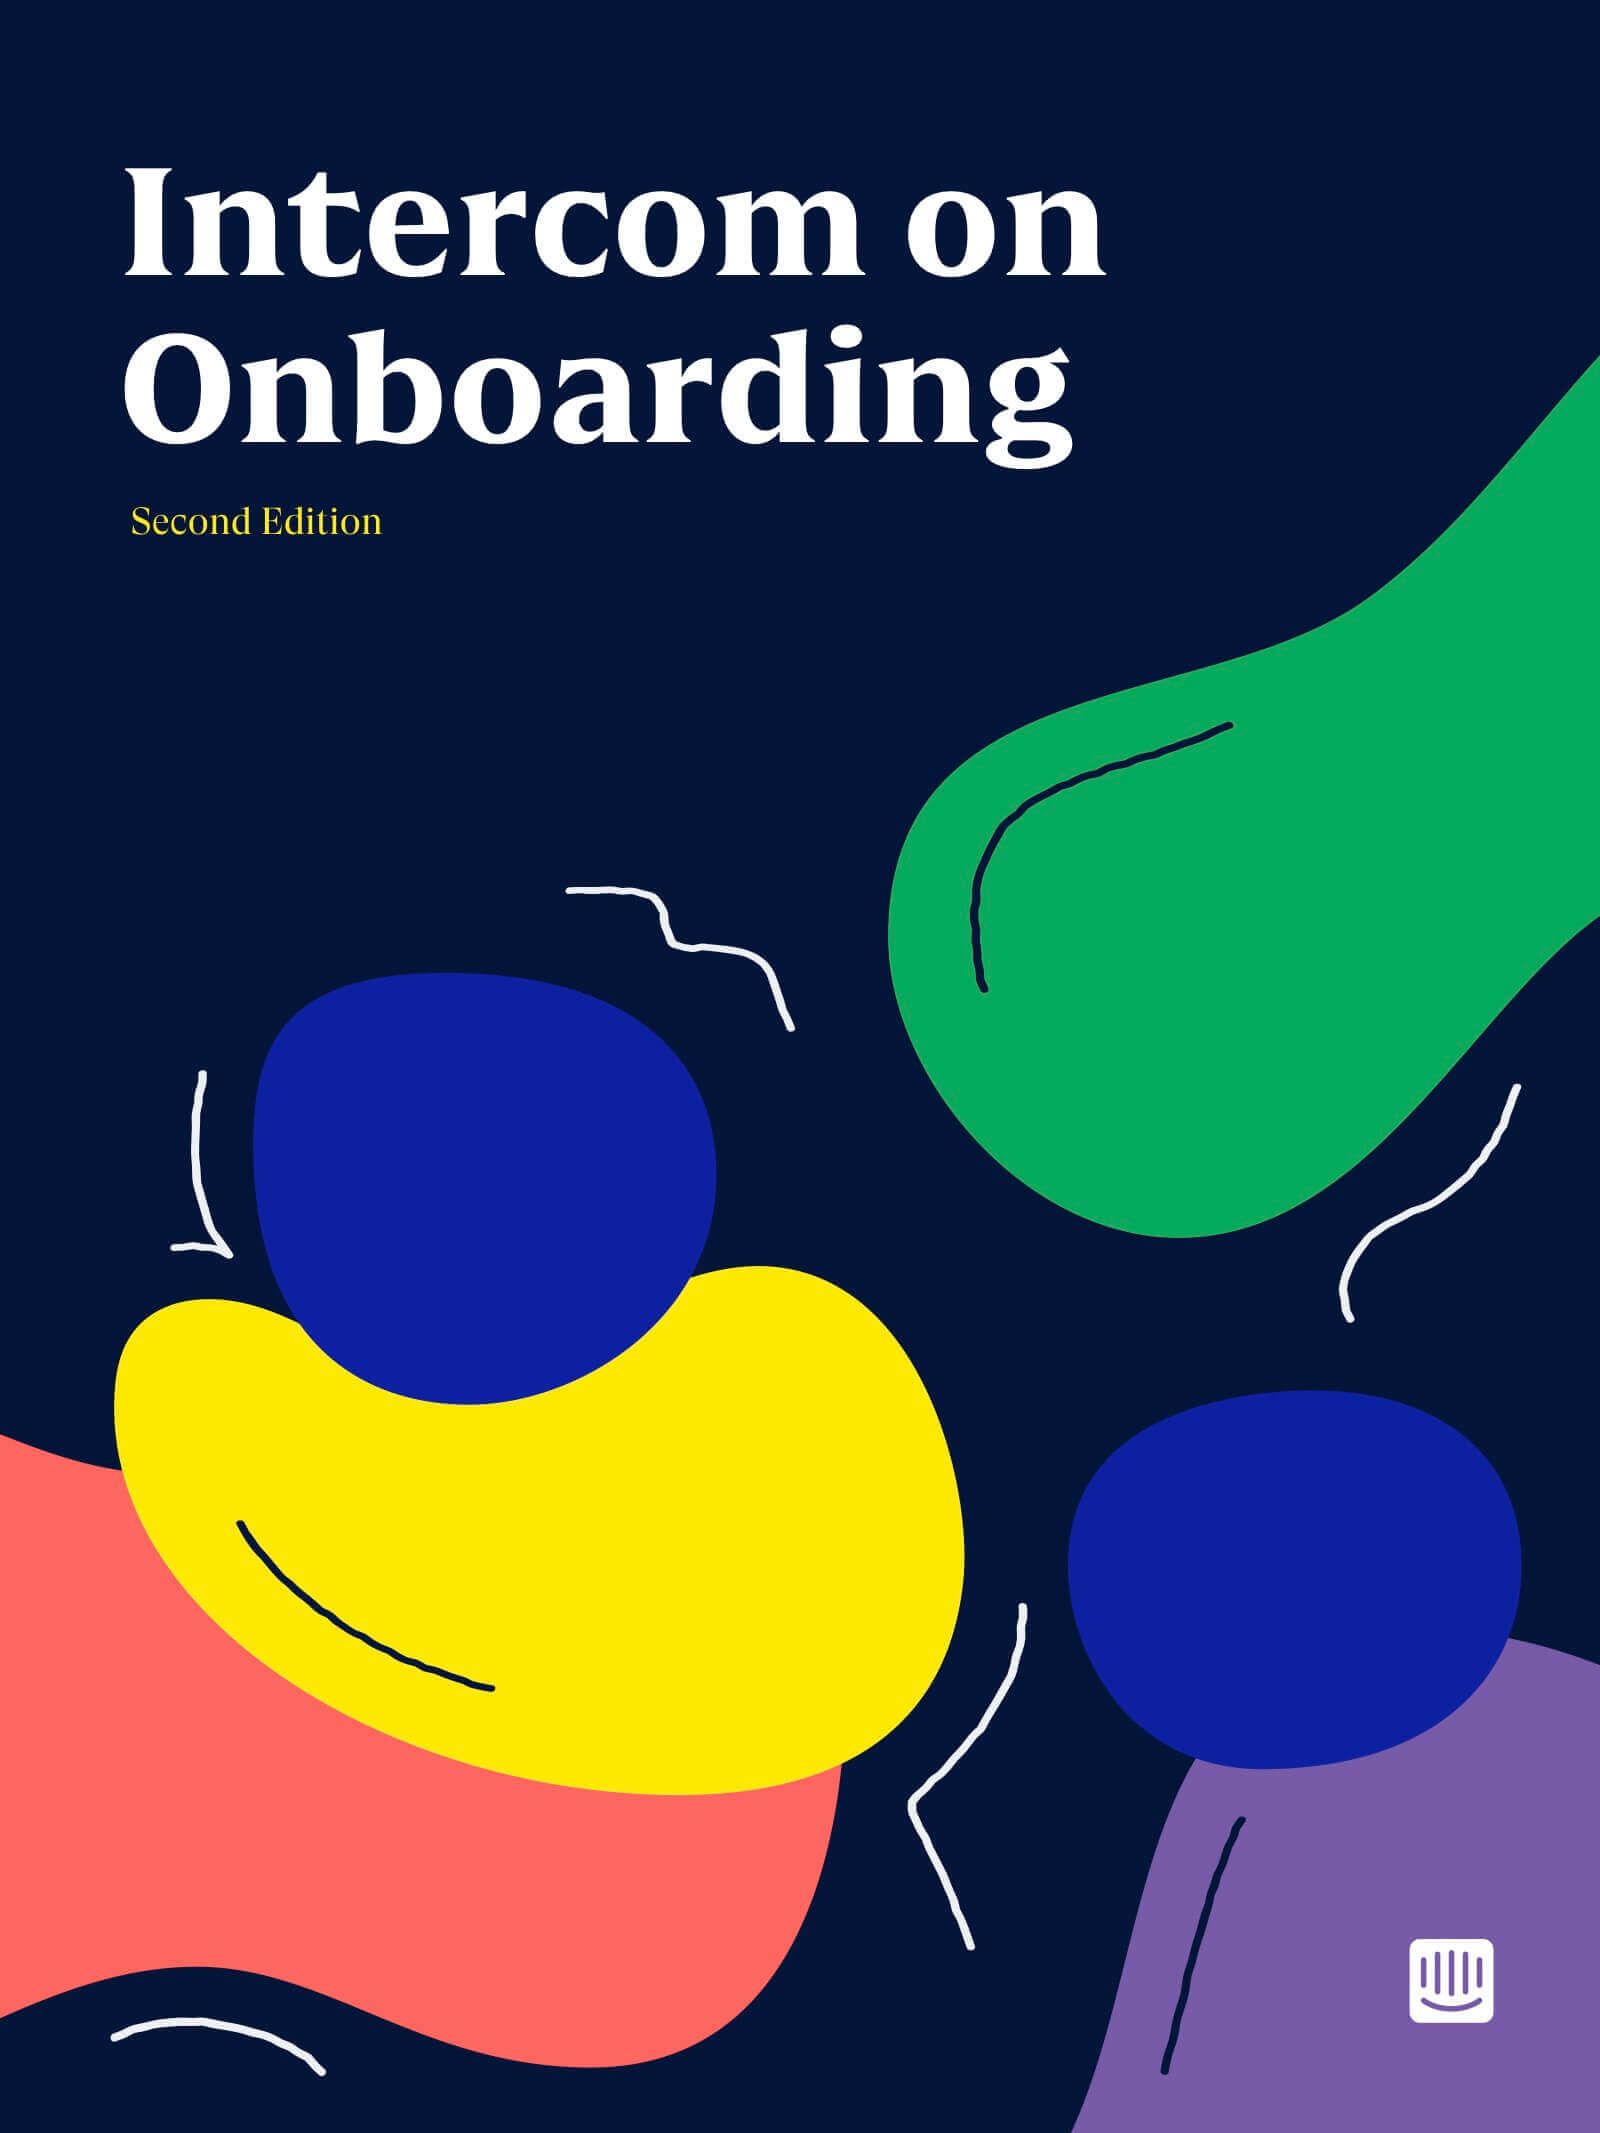 Intercom on Onboarding